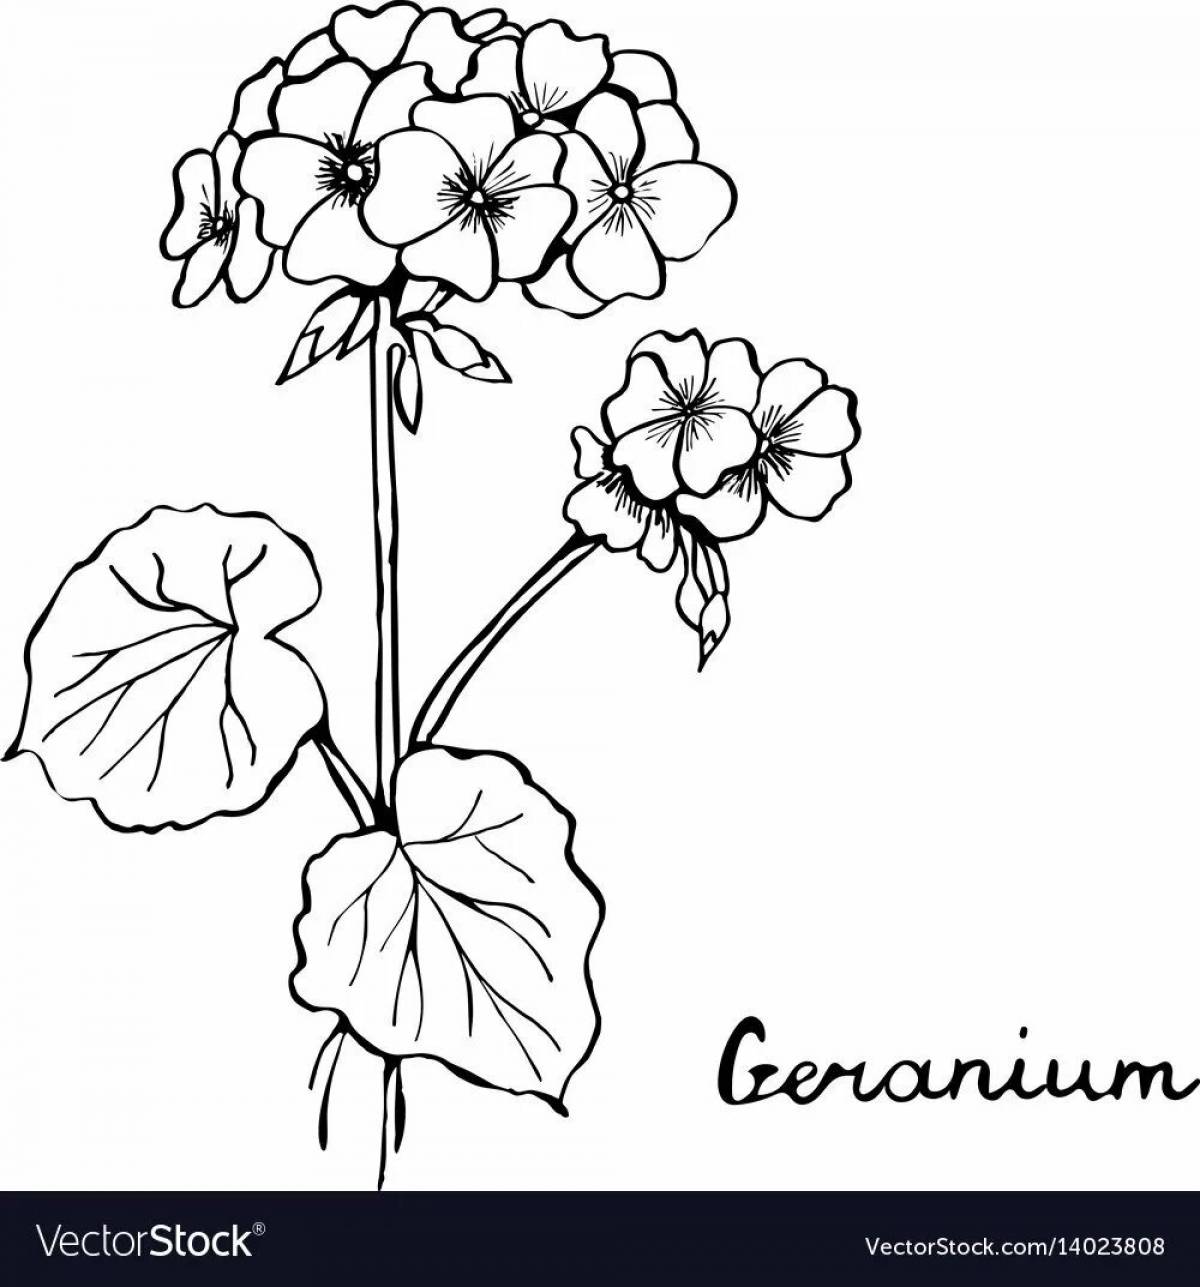 Friendly geranium in a pot for preschoolers